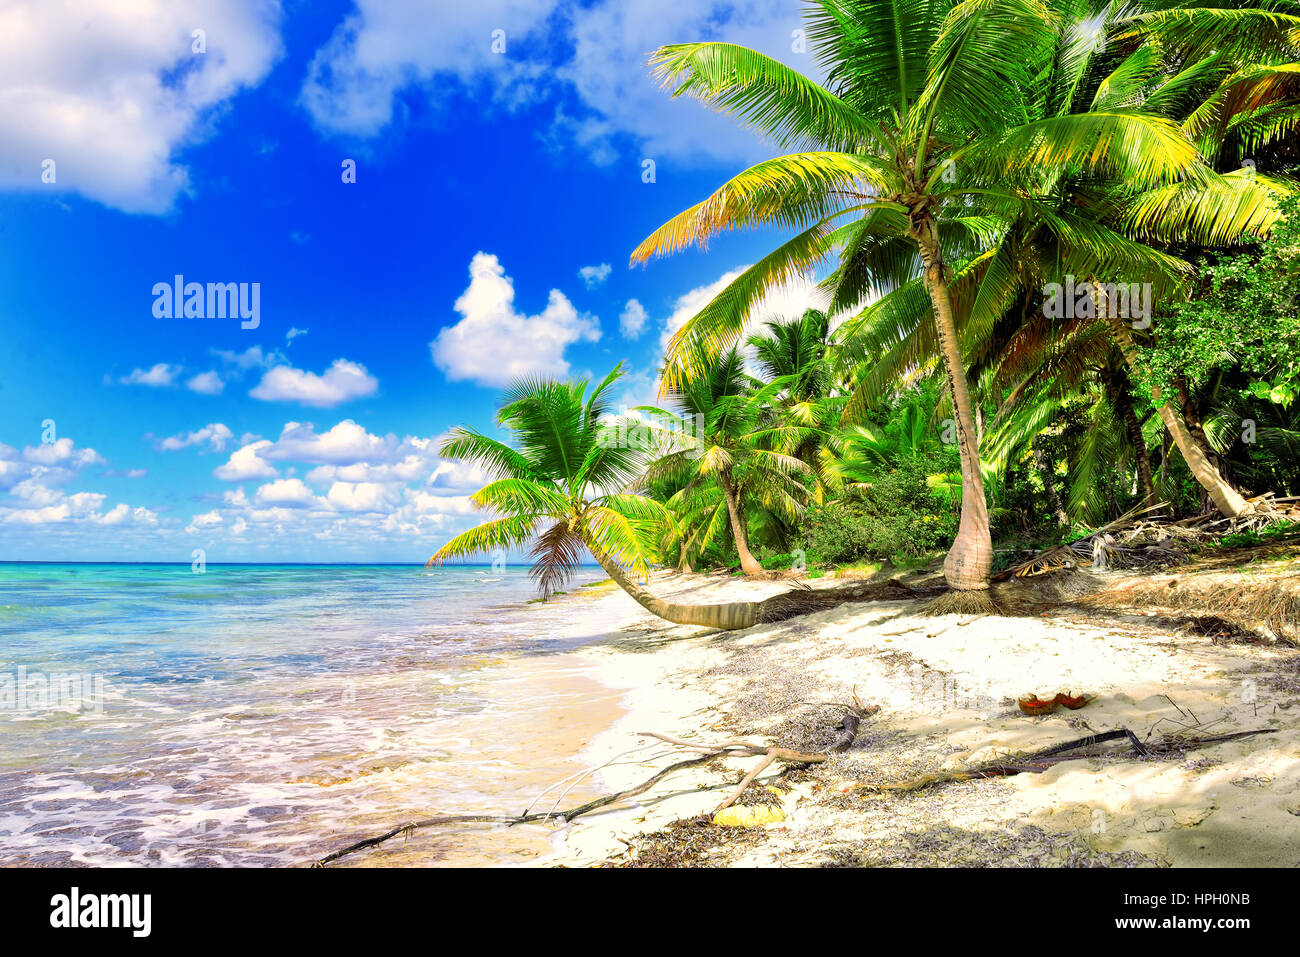 Paysage Tropical. Palm beach magnifique aux eaux turquoises et sable blanc. Vacances tropicales. Vacances tropicales relaxantes. Scène tropicale idyllique. S Banque D'Images